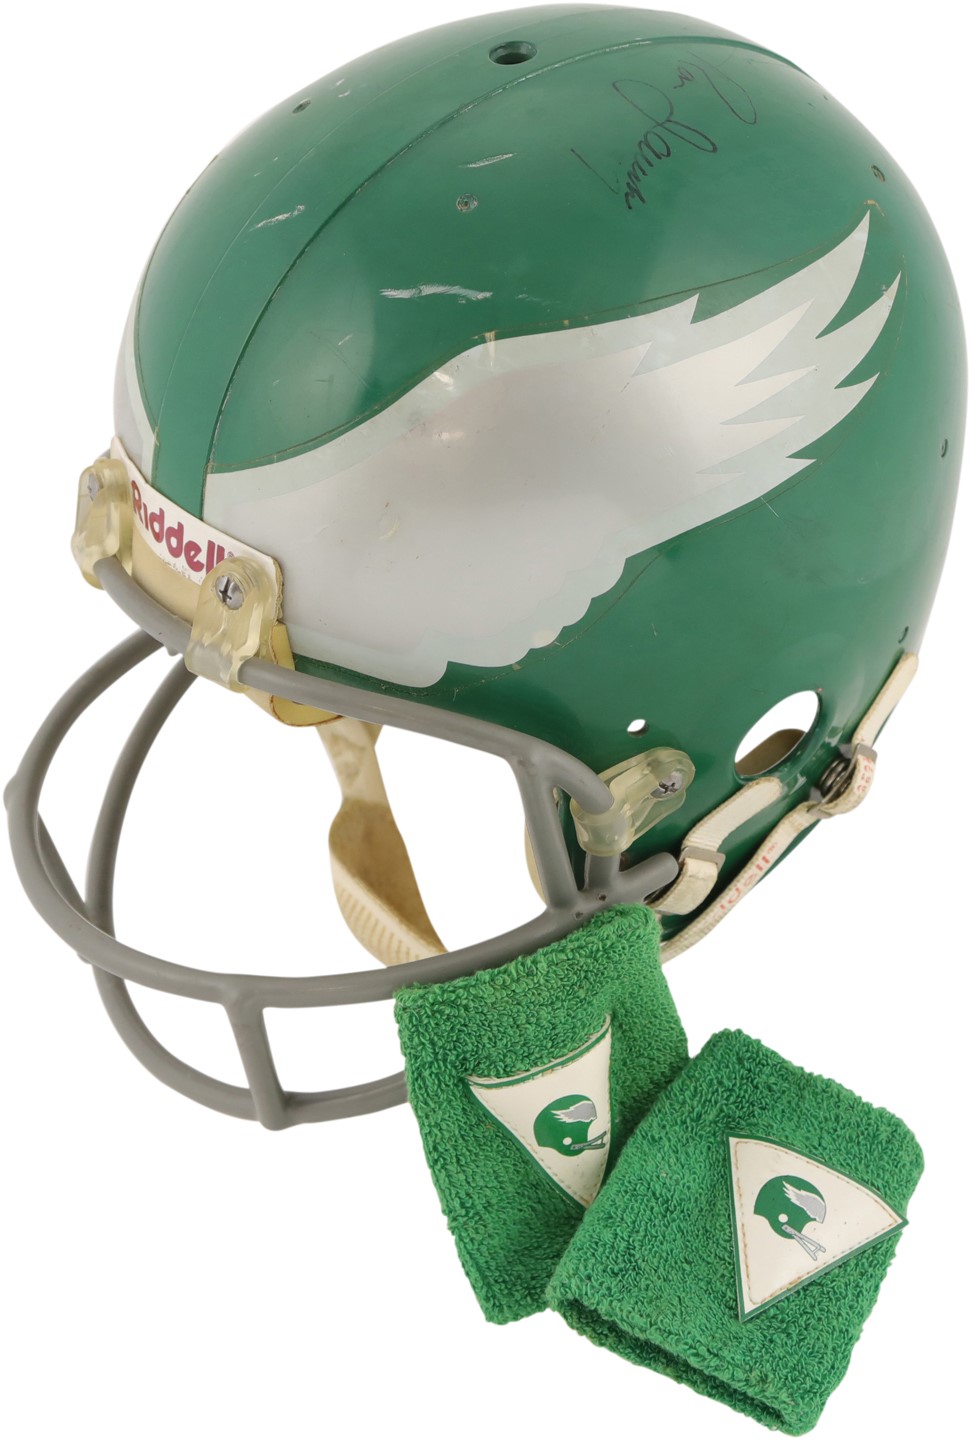 old philadelphia eagles helmet